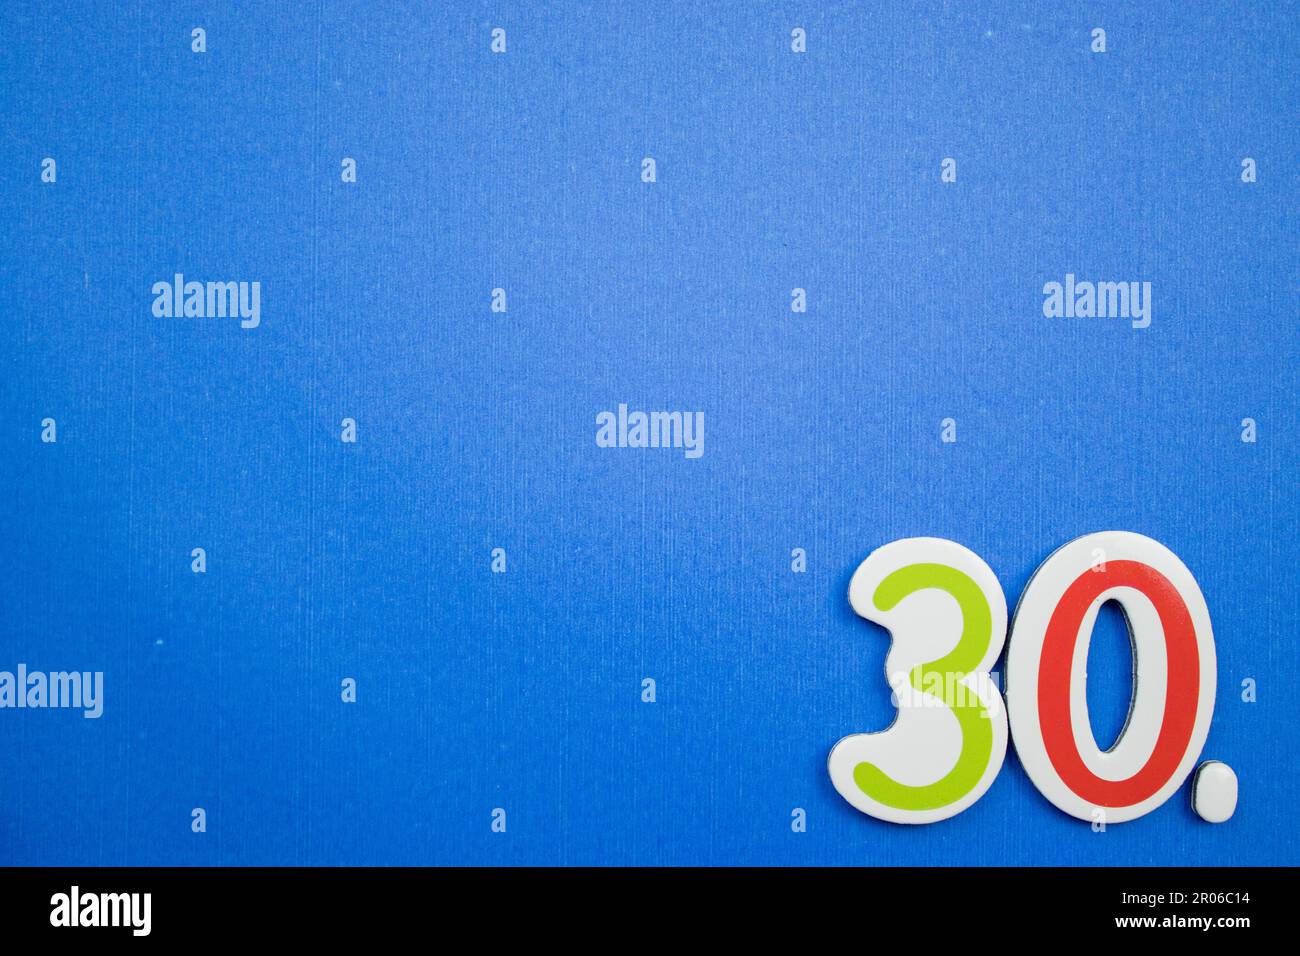 Il numero 30, posto sul bordo dello sfondo blu, fotografato dall'alto, di colore verde e rosso. Foto Stock